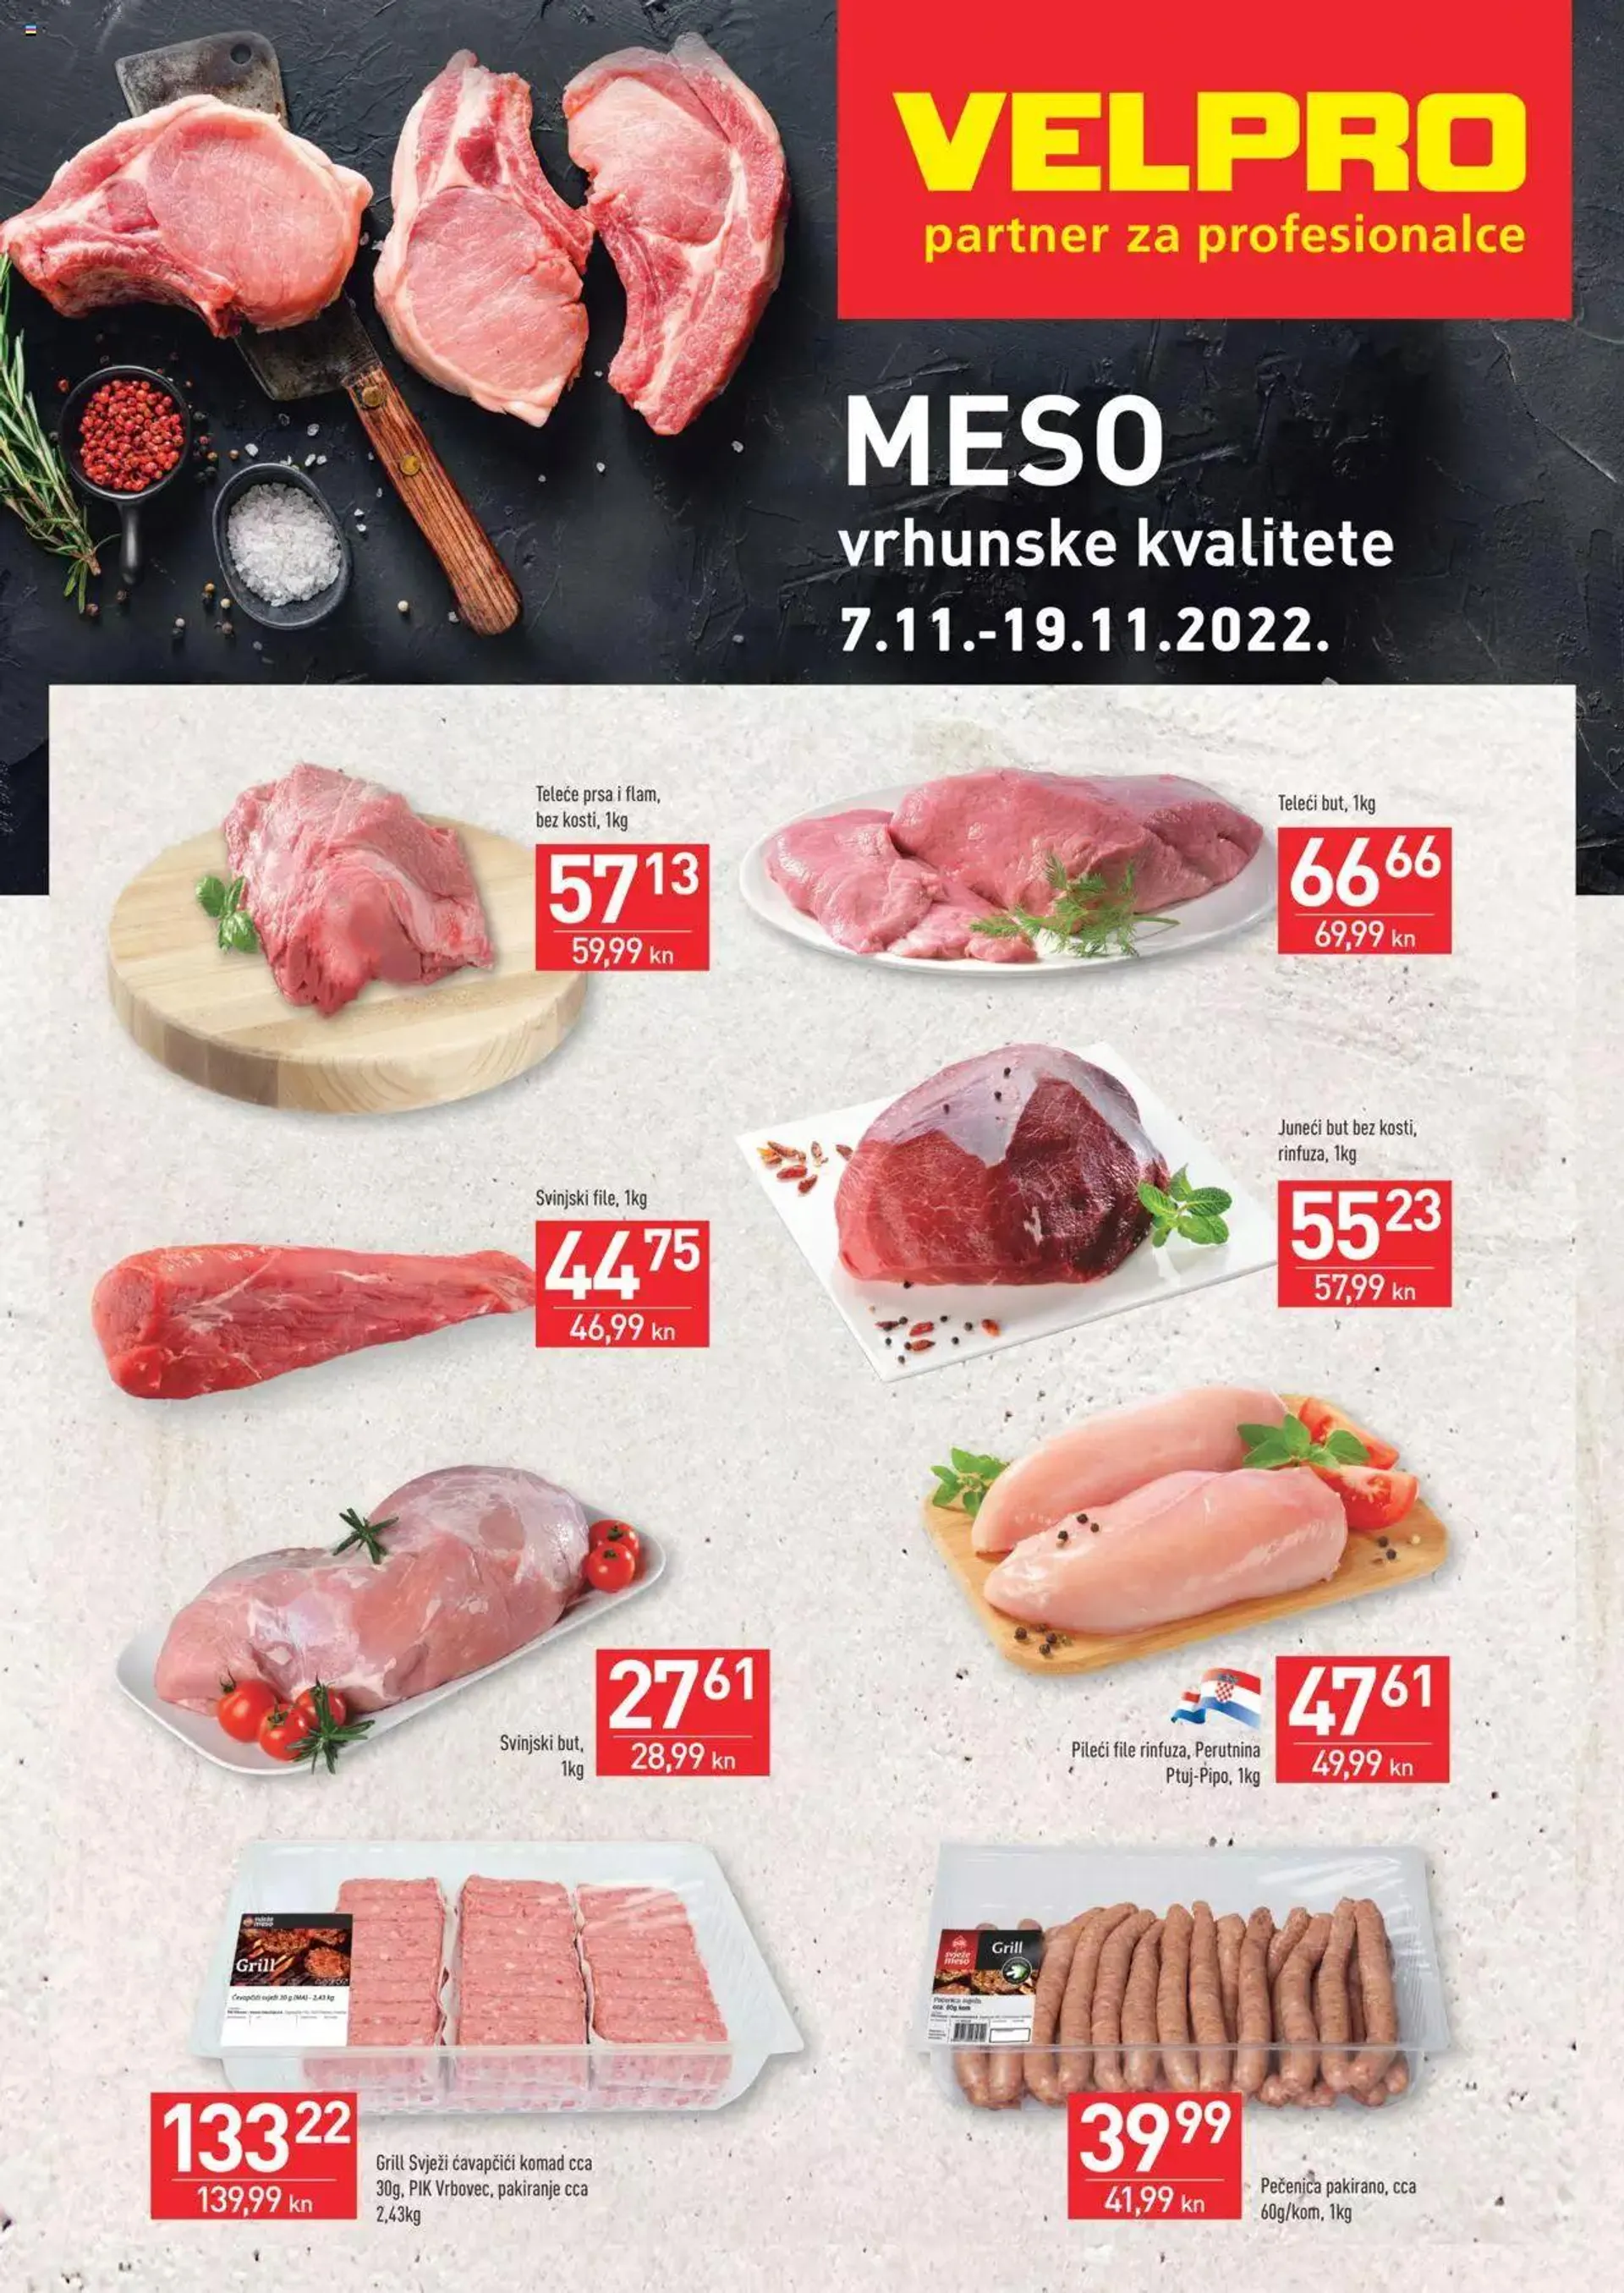 Velpro - Akcijska ponuda mesa - 0